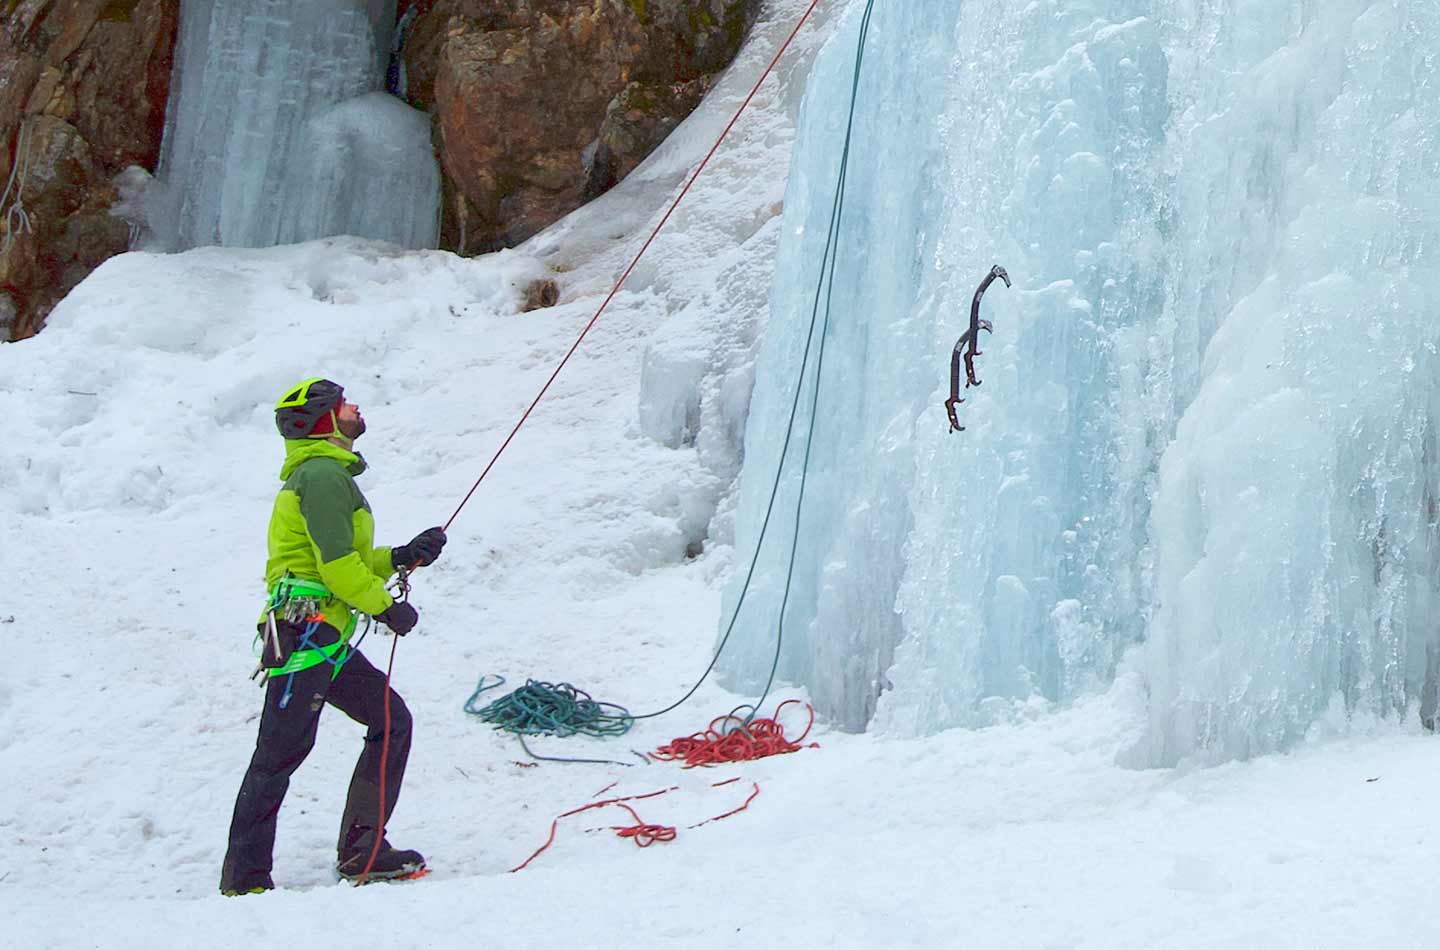 Mann in grüner Jacke sichert an der Eiswand.